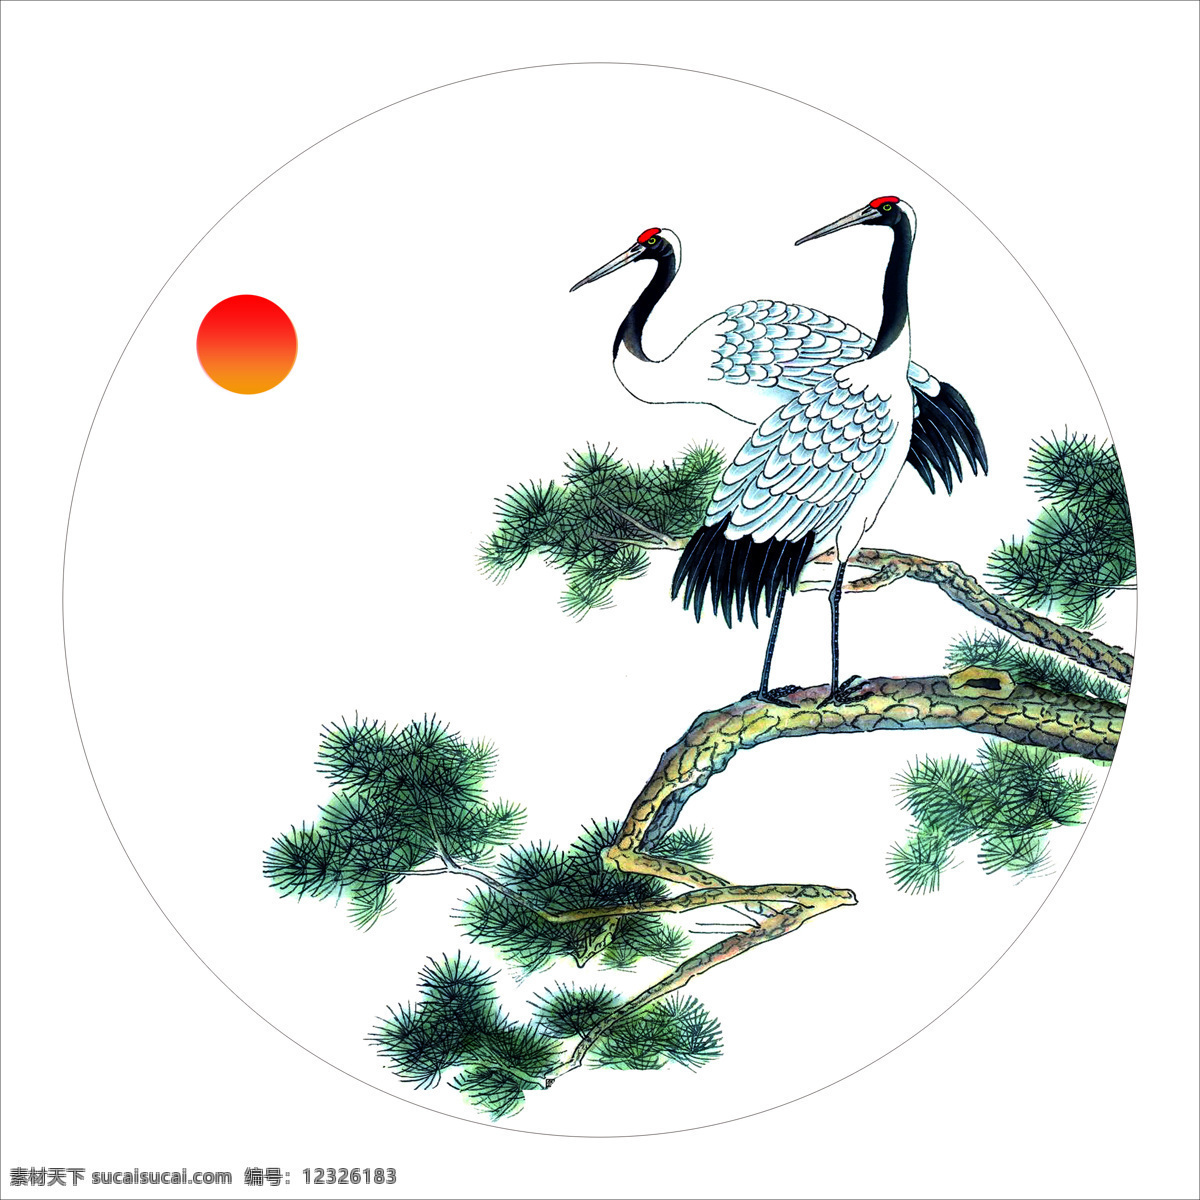 鹤 油墨画 扇面 山水画 圆扇 水彩画 仙鹤 文化艺术 传统文化